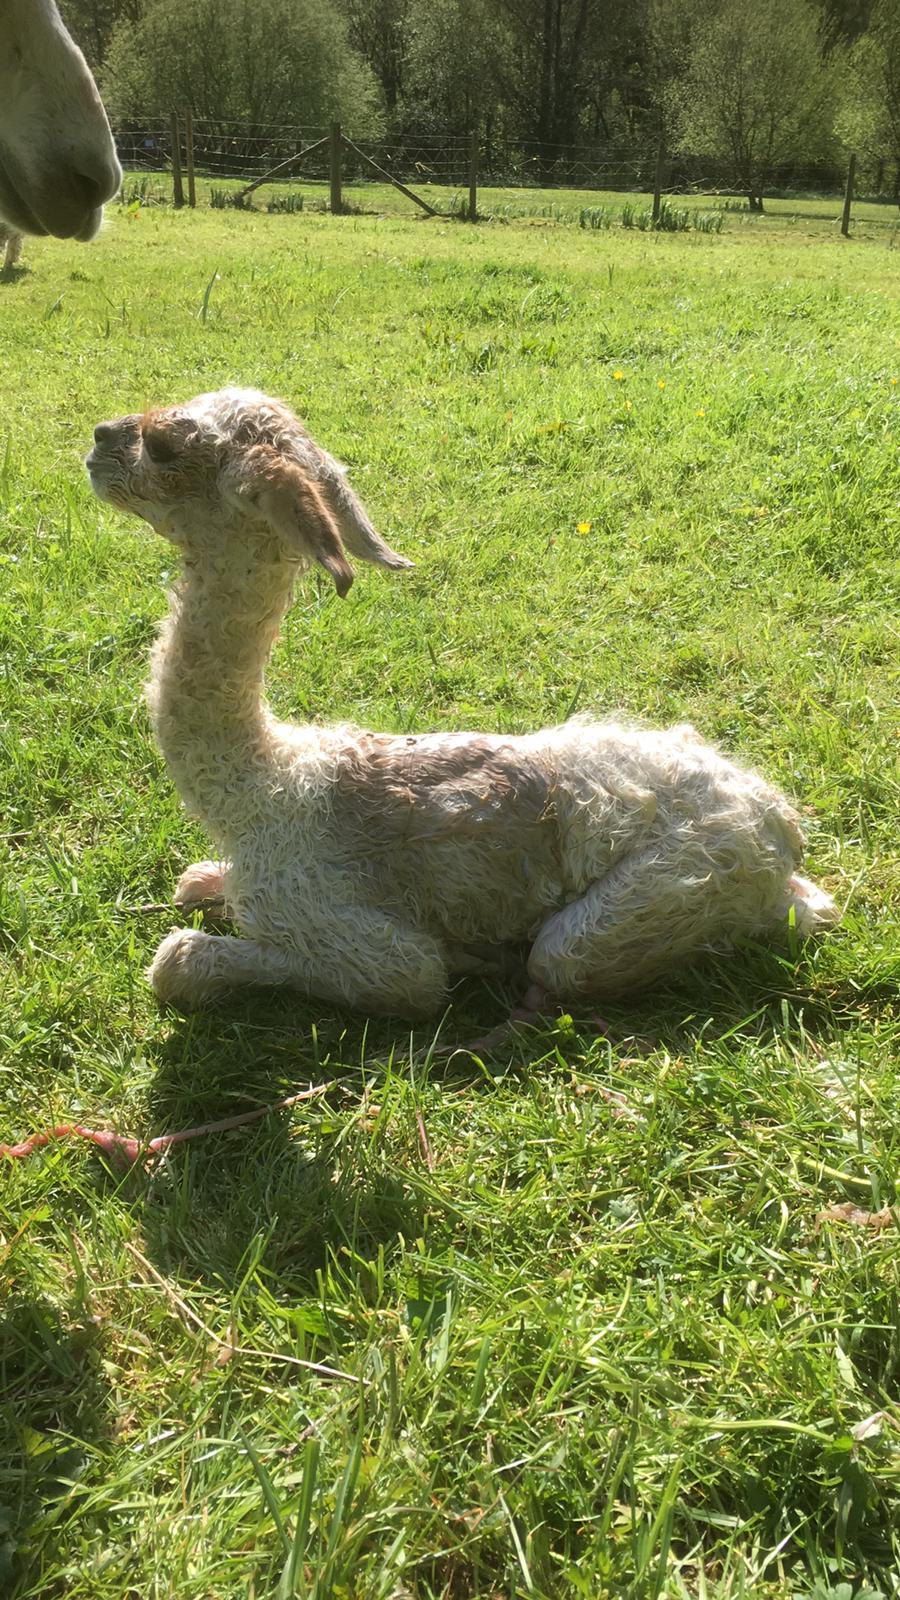 Adult Alpaca Fleece Fleece for sale - Hensting Alpacas